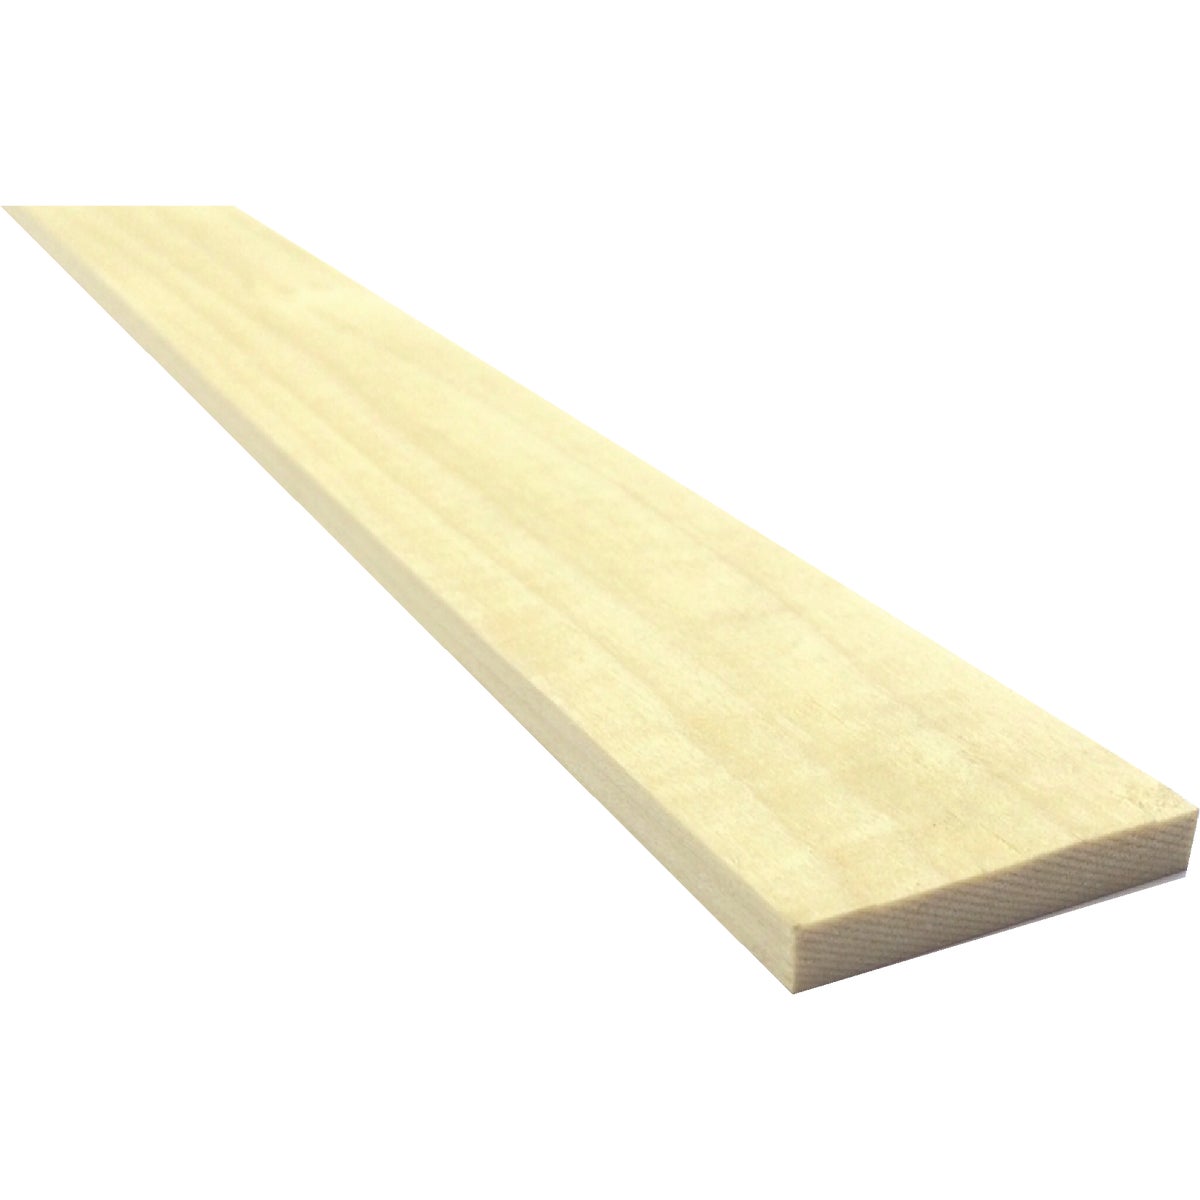 Waddell 1/4 In. x 4 In. x 4 Ft. Poplar Wood Board